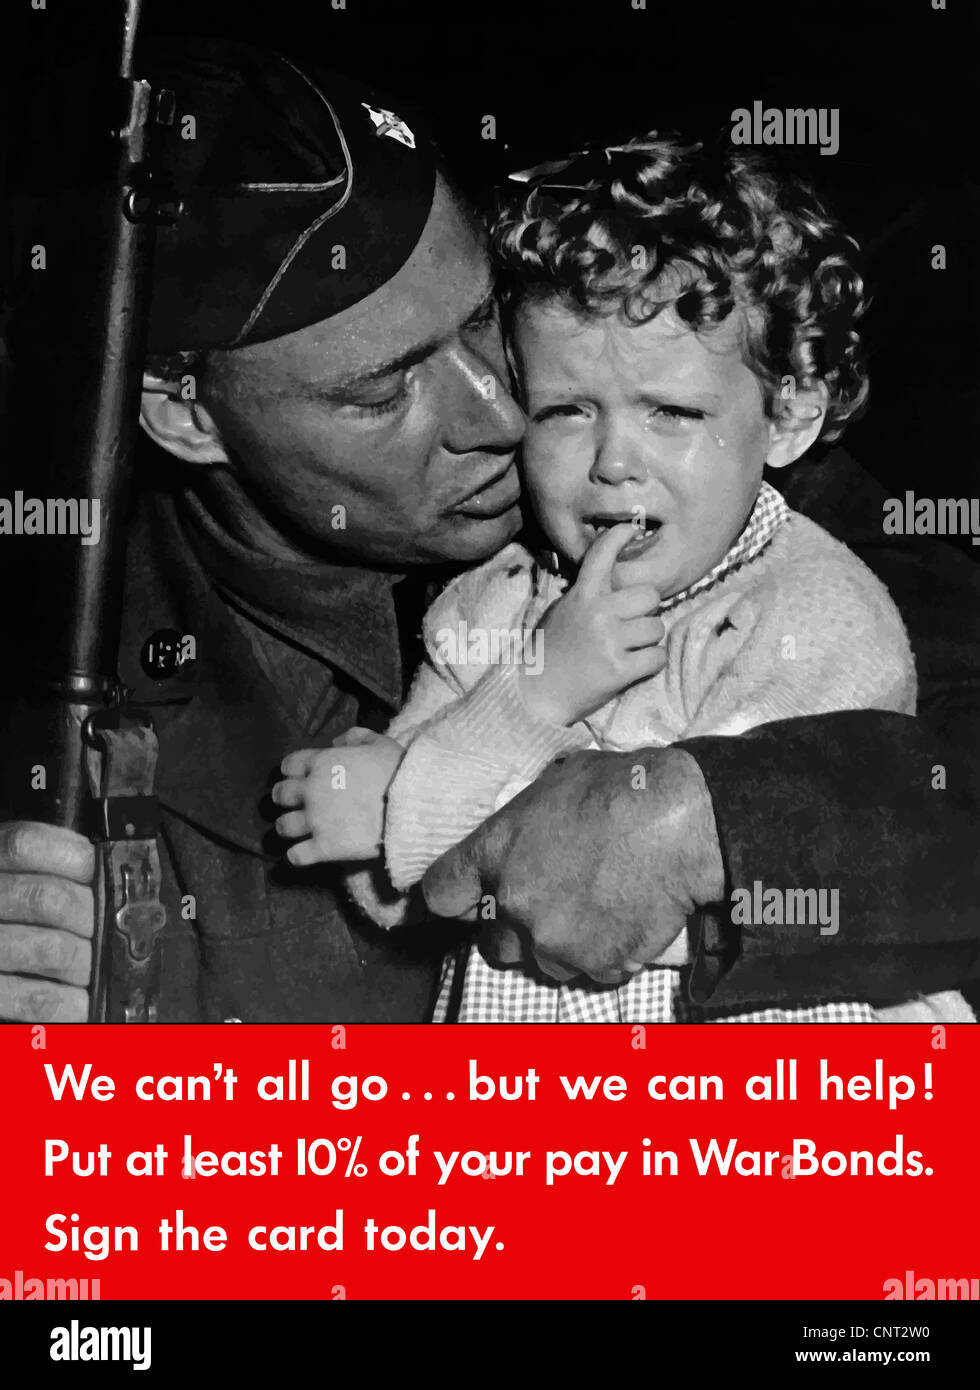 Ce millésime La Seconde Guerre mondiale affiche dispose d'un soldat, fusil en main, tenant un enfant qui pleure. Banque D'Images